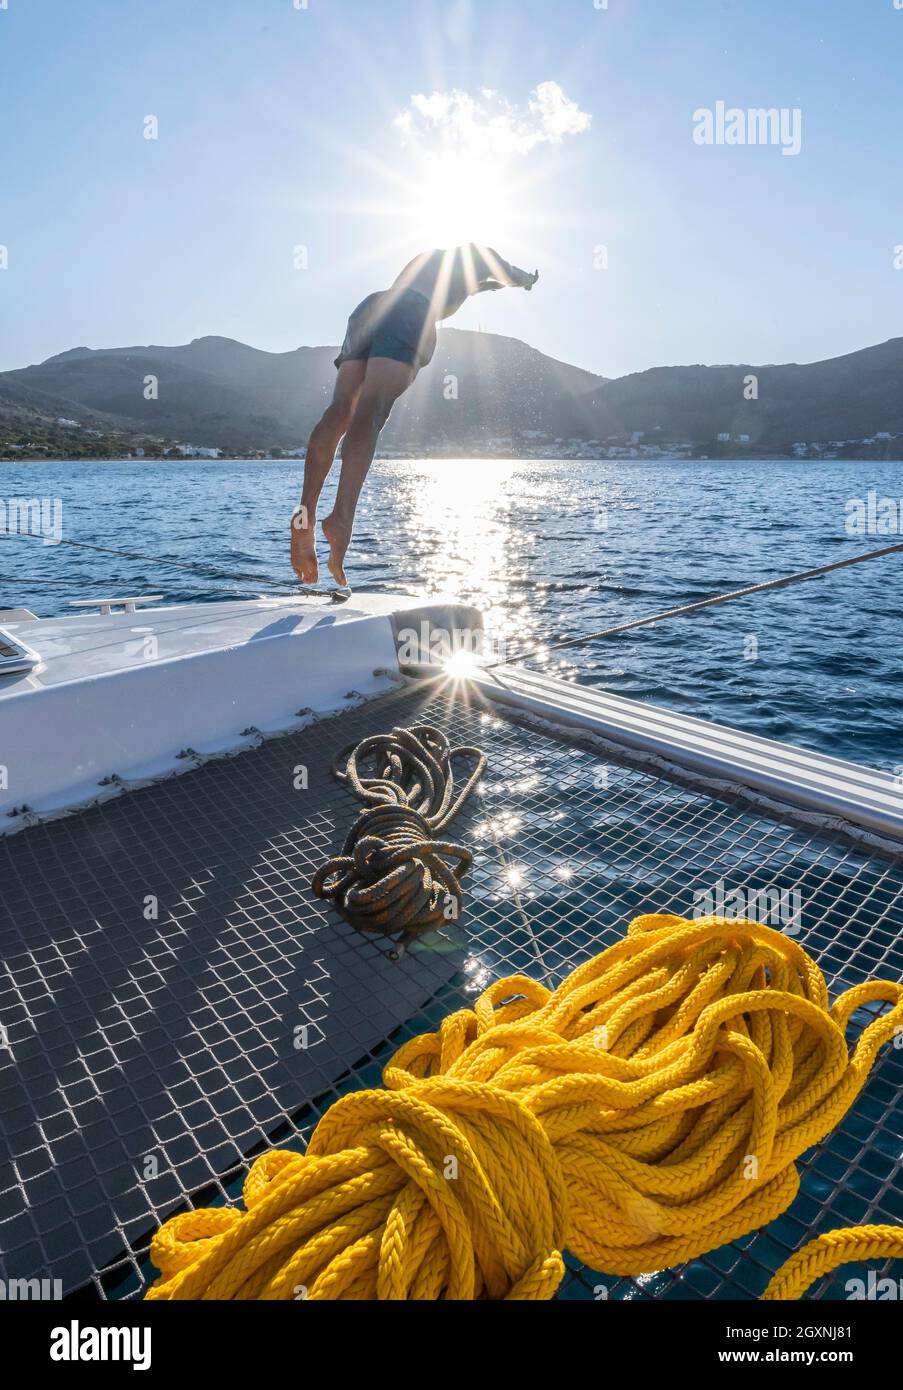 Il giovane uomo salta in acqua, corde su un catamarano a vela, Sun Star, gita in barca a vela, Tilos, Dodecaneso, Grecia Foto Stock